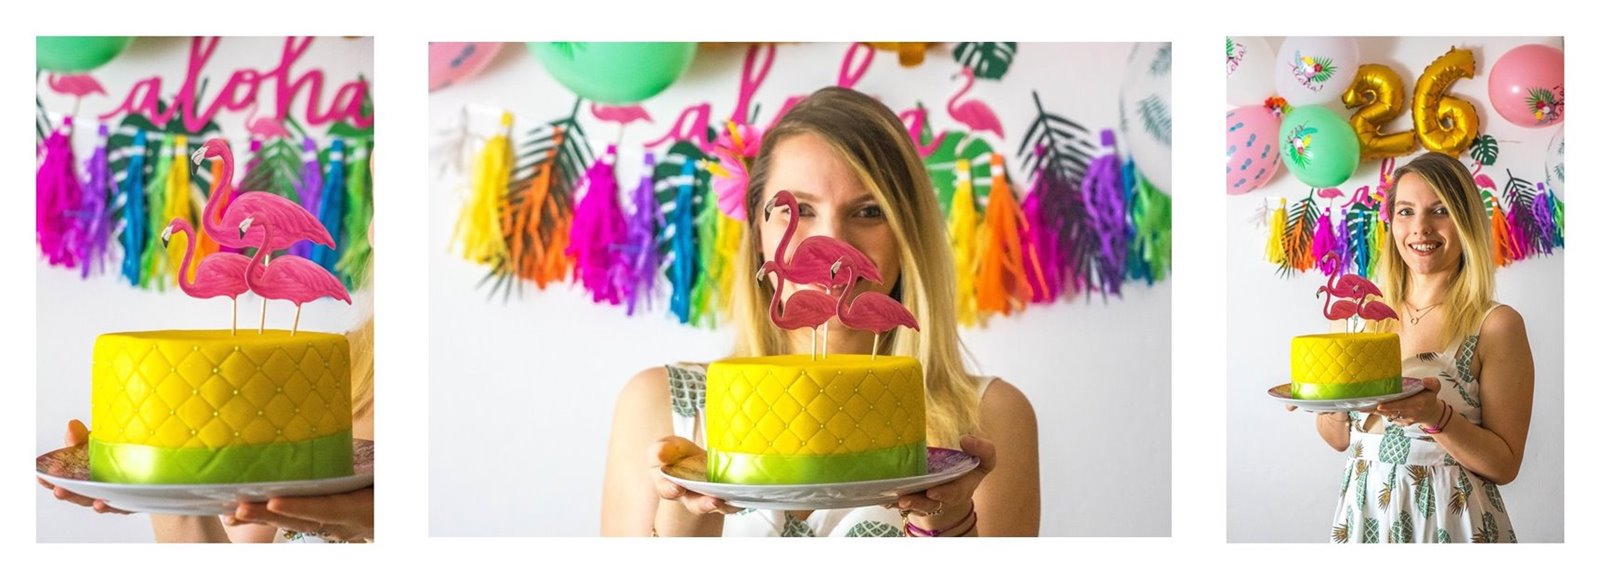 7a twój tort cake pops opinie jak smakuje recenzja czy dobre gdzie zamówić tort online nie dłodkie torty tęczowe wnętrze jak zamówić ile kosztuje cena blog urodziny dekoracje hawajskie